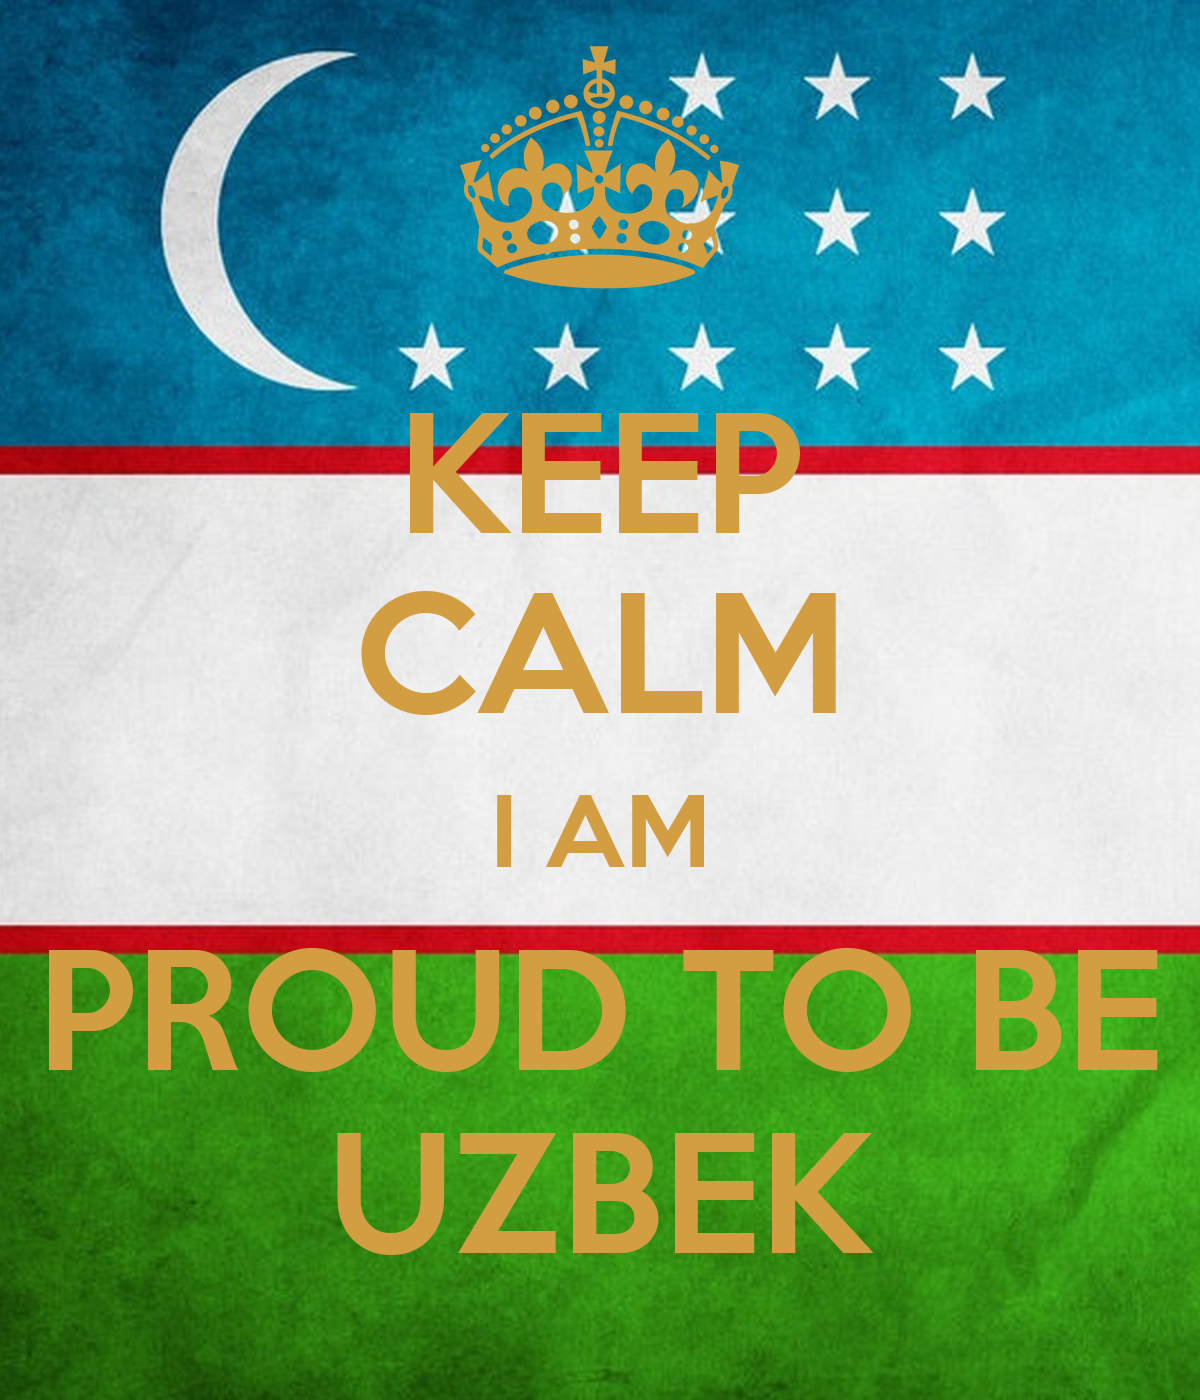 I am Uzbek. Proud to be Uzbek. Welcome to Uzbekistan плакат. Я узбек.